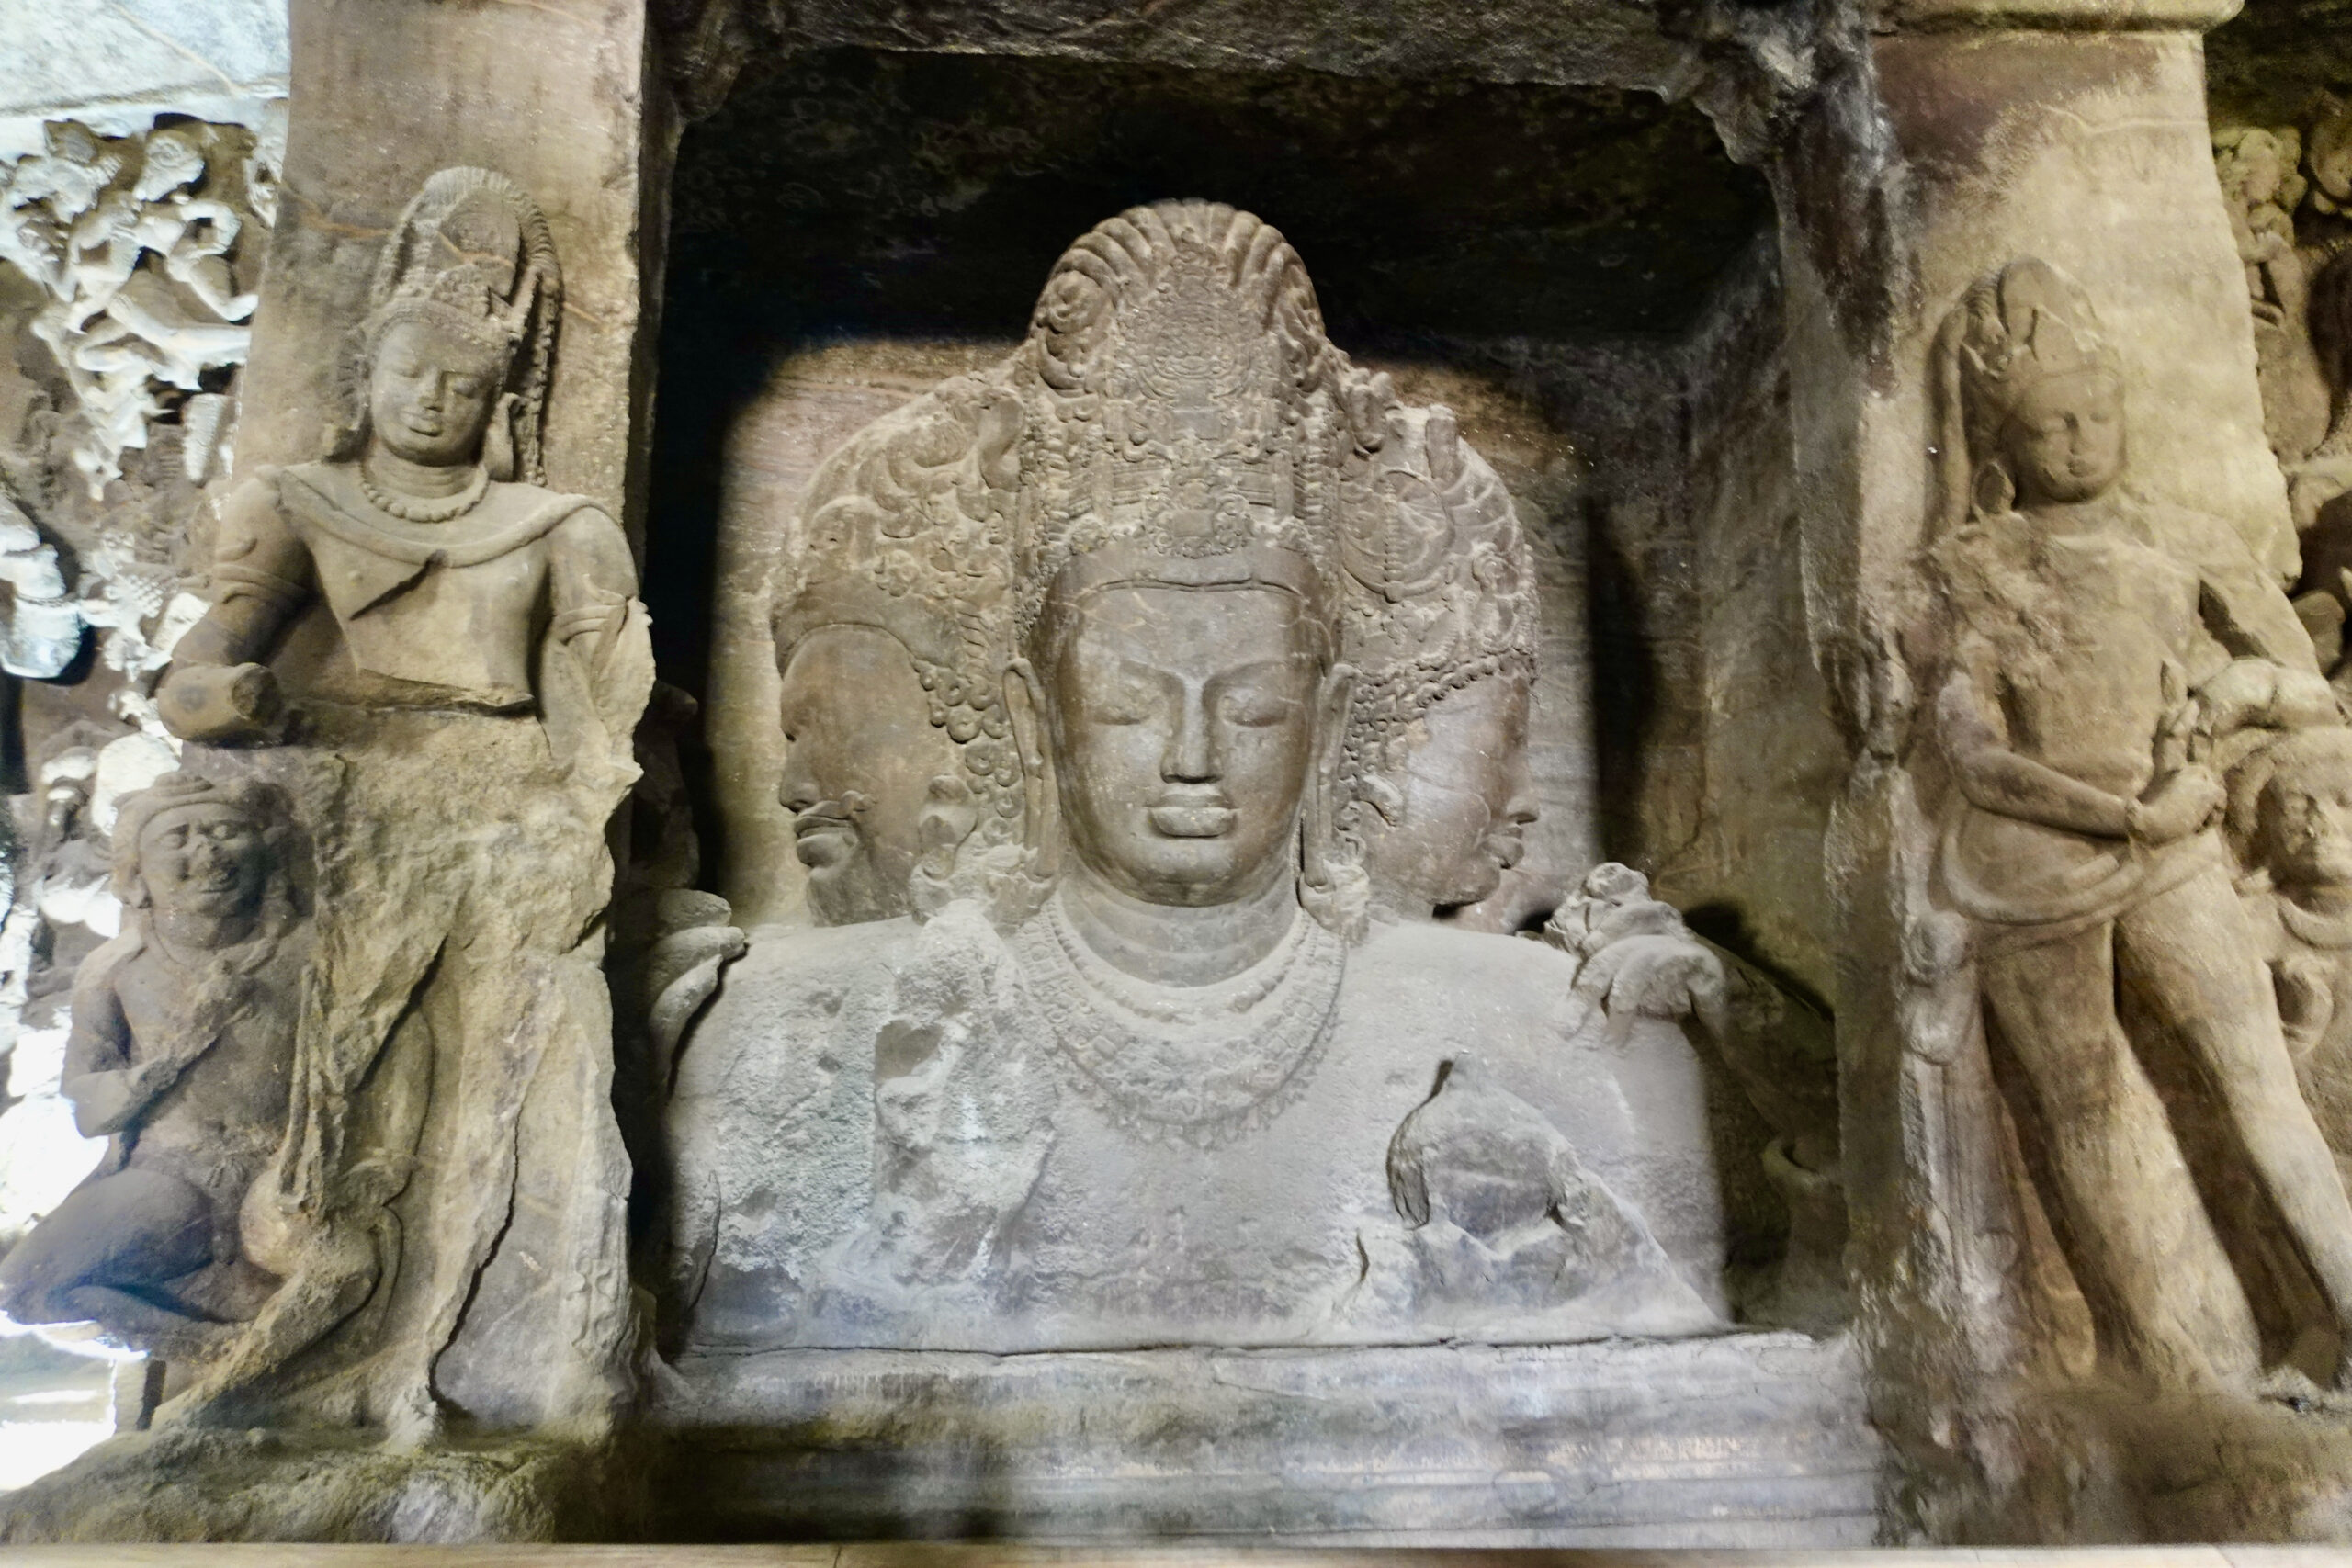 Insgesamt gibt es sieben Höhlen voller Hinduskulpturen zu bestaunen.